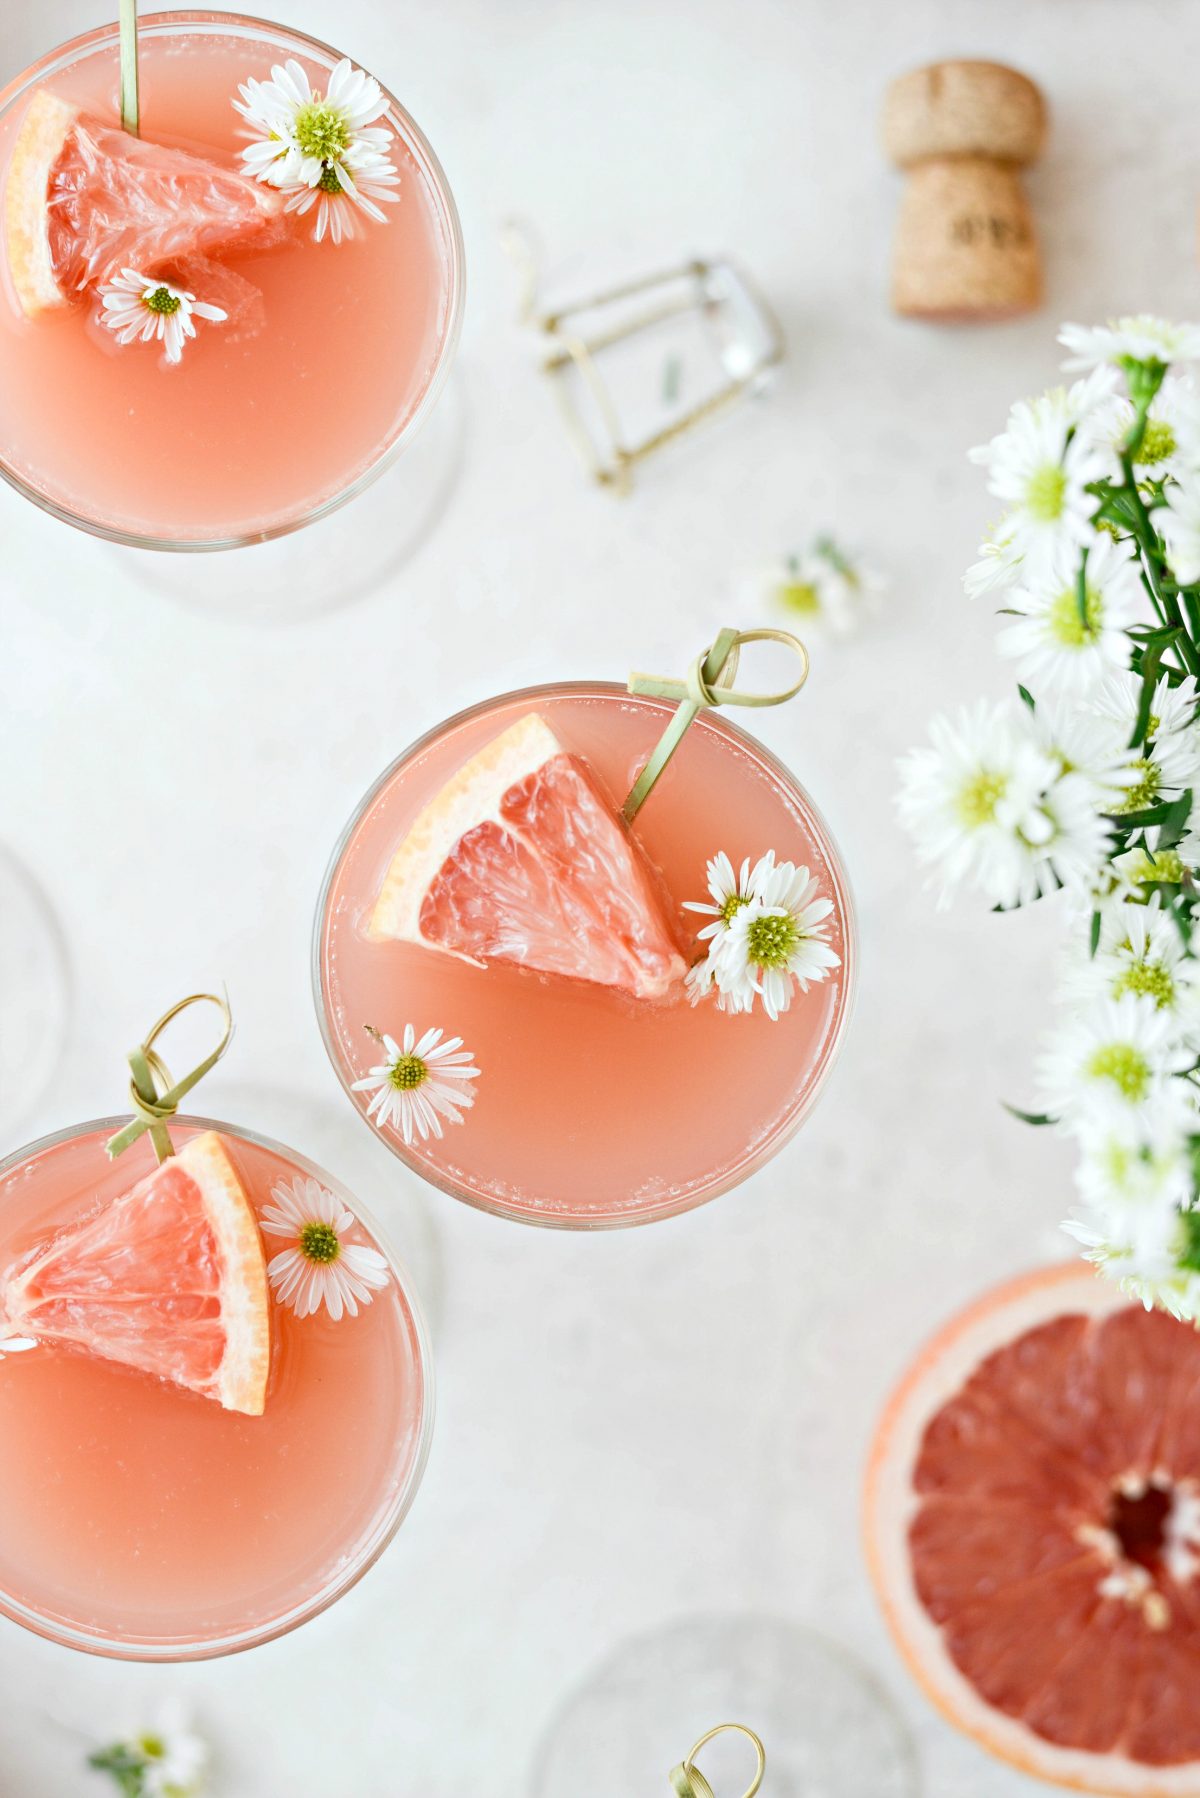  Grapefruit Rosé Mimosen l SimplyScratch.com #erwachsene #getränke #grapefruit #rose #mimosa #ostern #brunch #mothersday